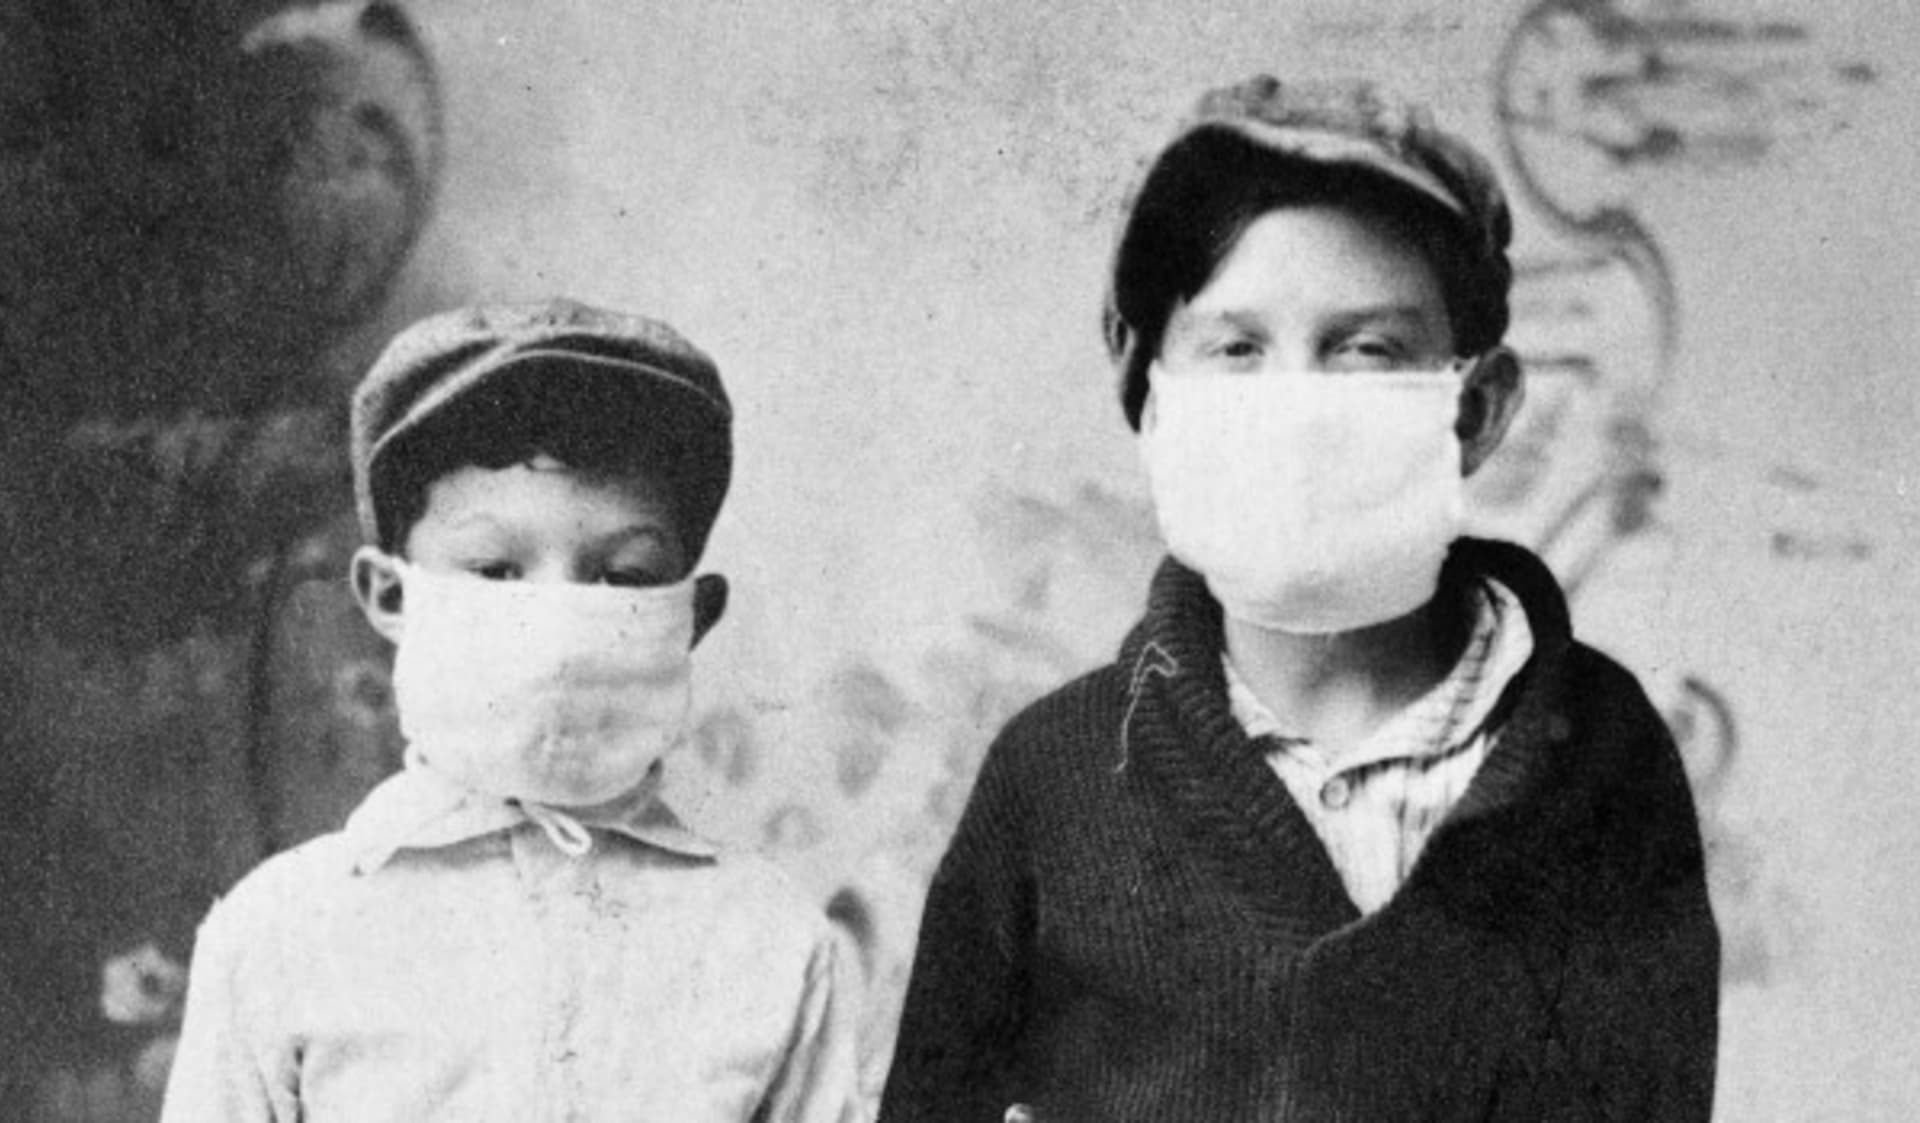 Děti s rouškou během pandemie španělské chřipky v roce 1918